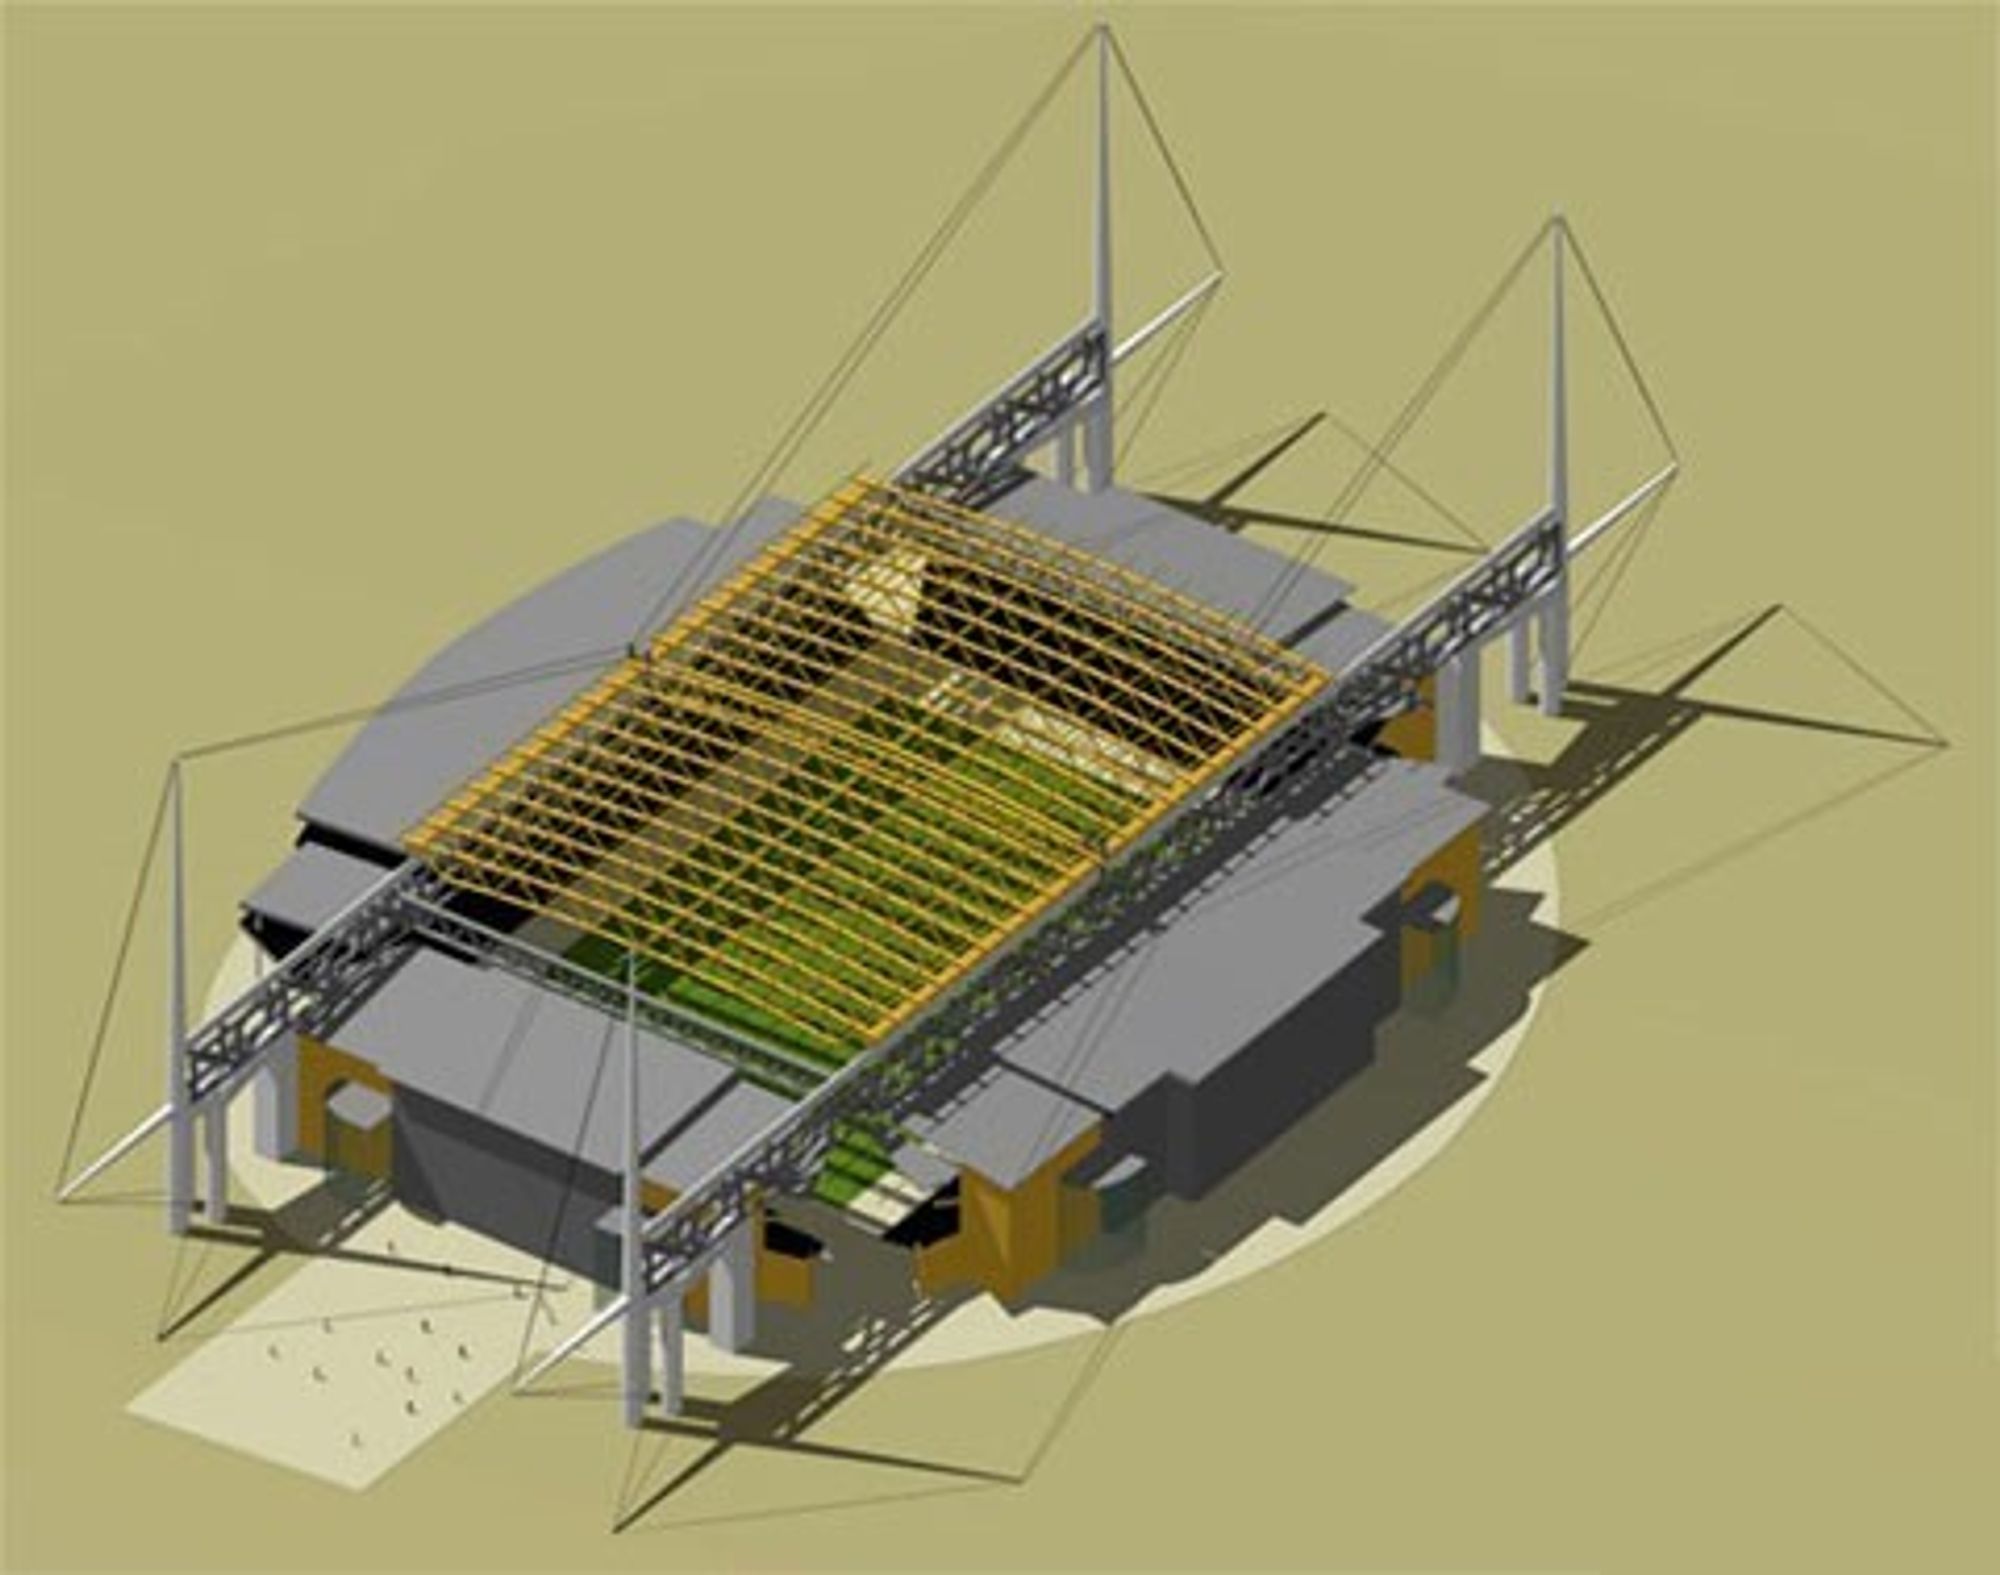 Slik planlegges taket over Lerkendal stadion i Trondheim.